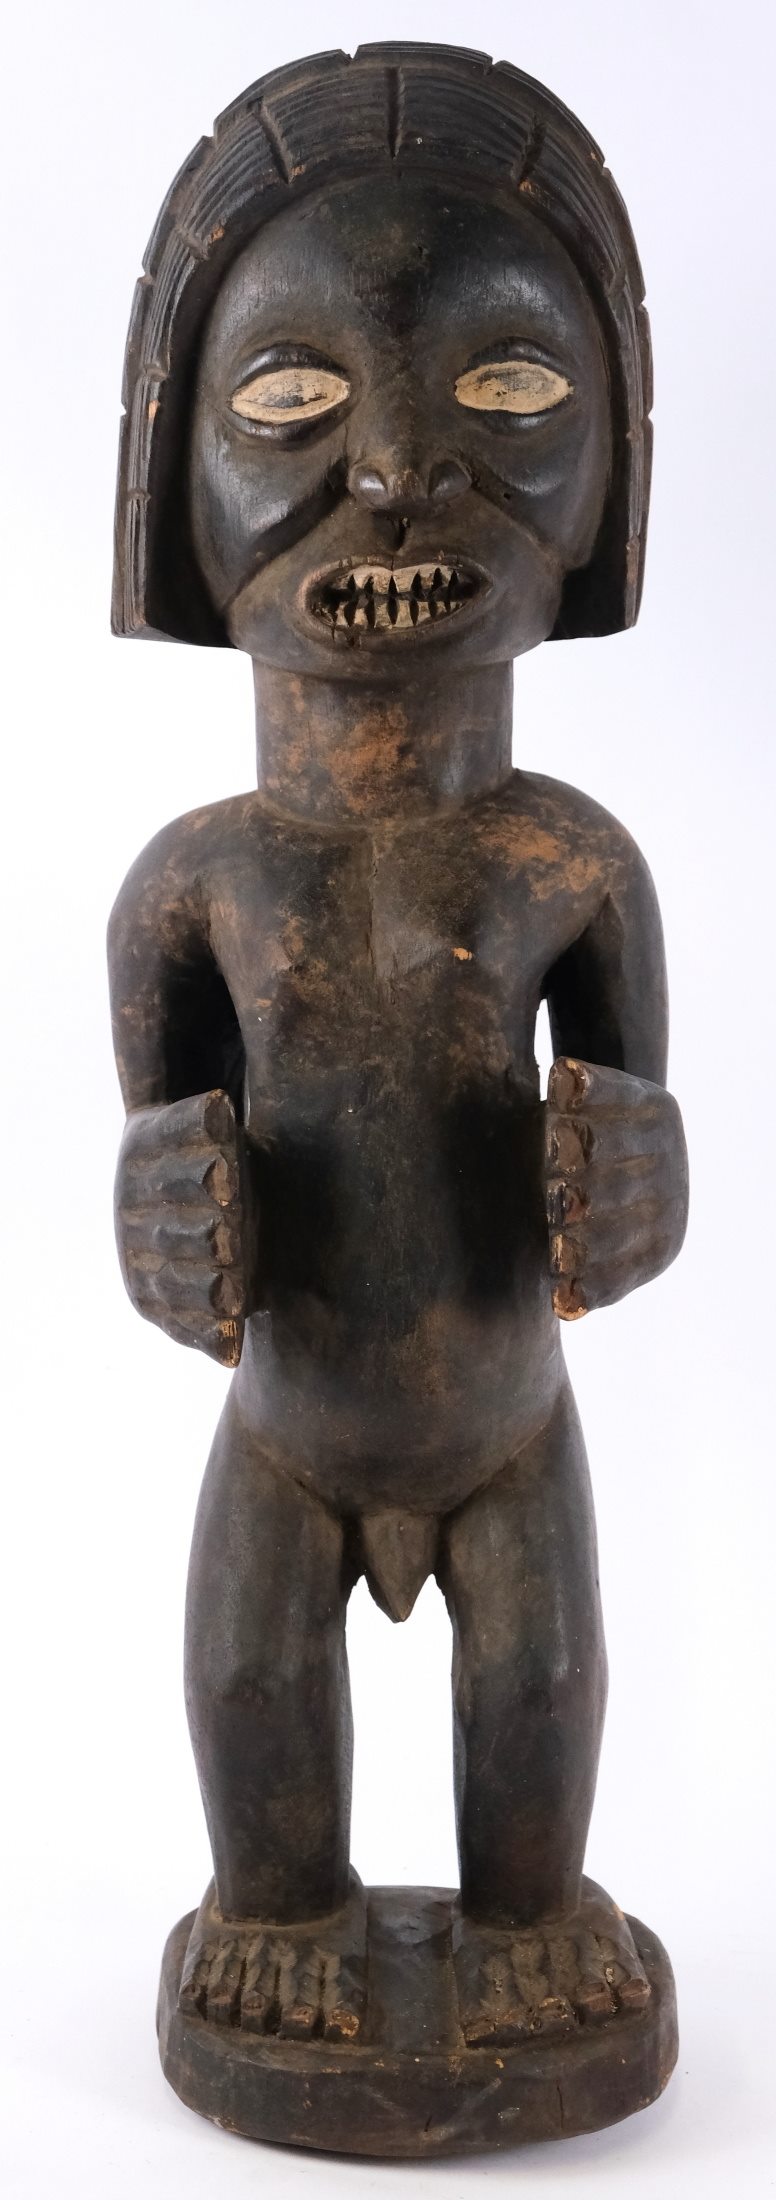 Kongo, kolem poloviny 20. století - Socha předka kmene Teke